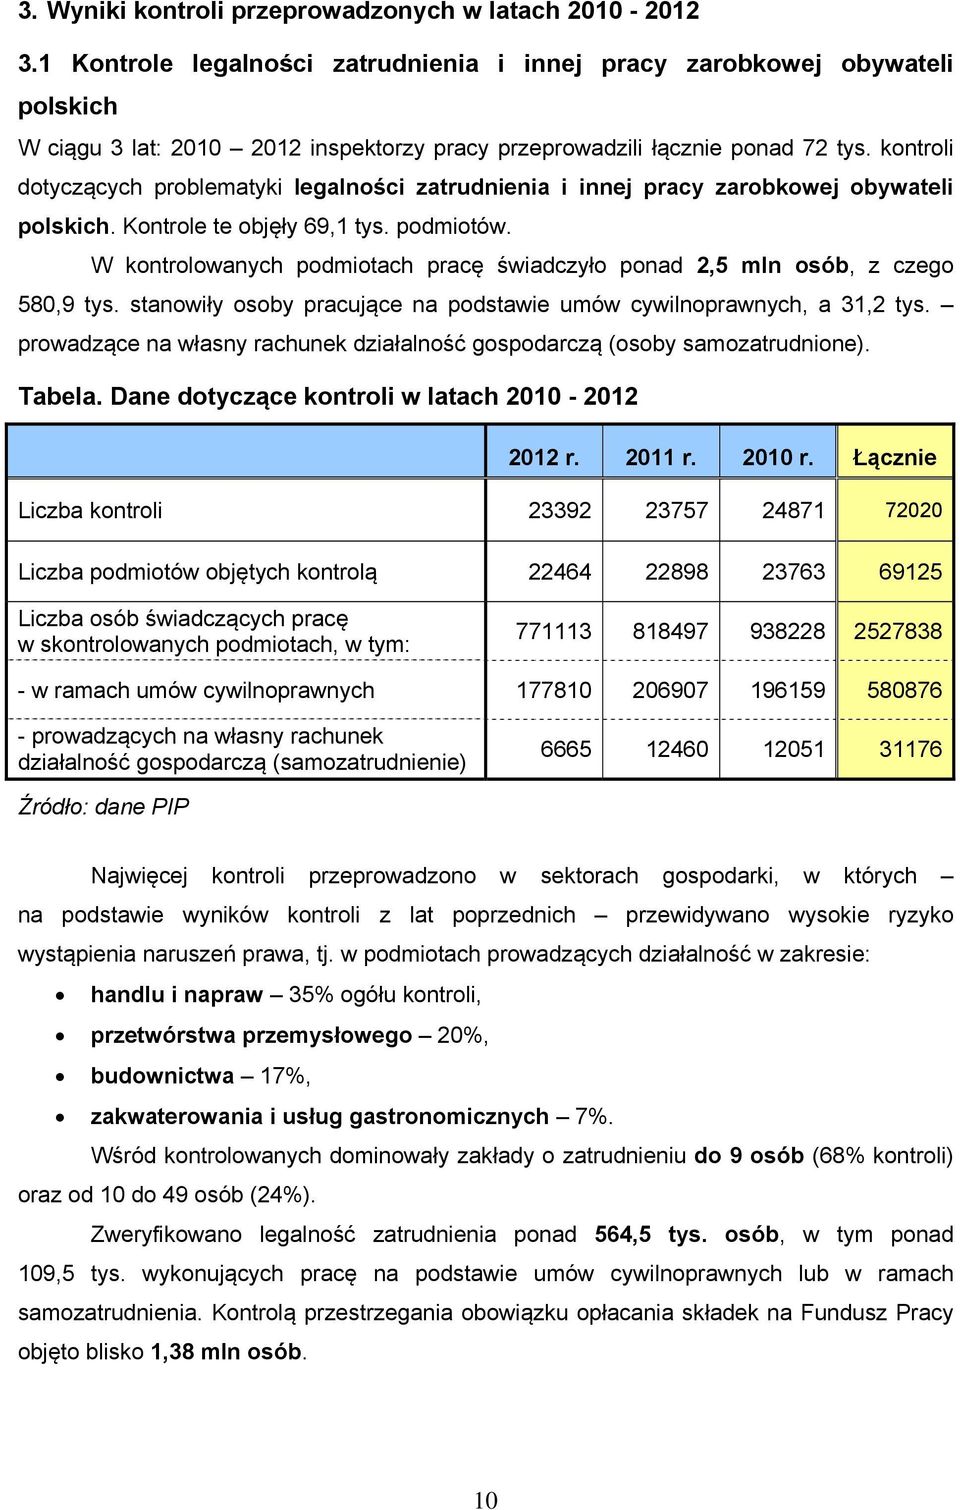 kontroli dotyczących problematyki legalności zatrudnienia i innej pracy zarobkowej obywateli polskich. Kontrole te objęły 69,1 tys. podmiotów.